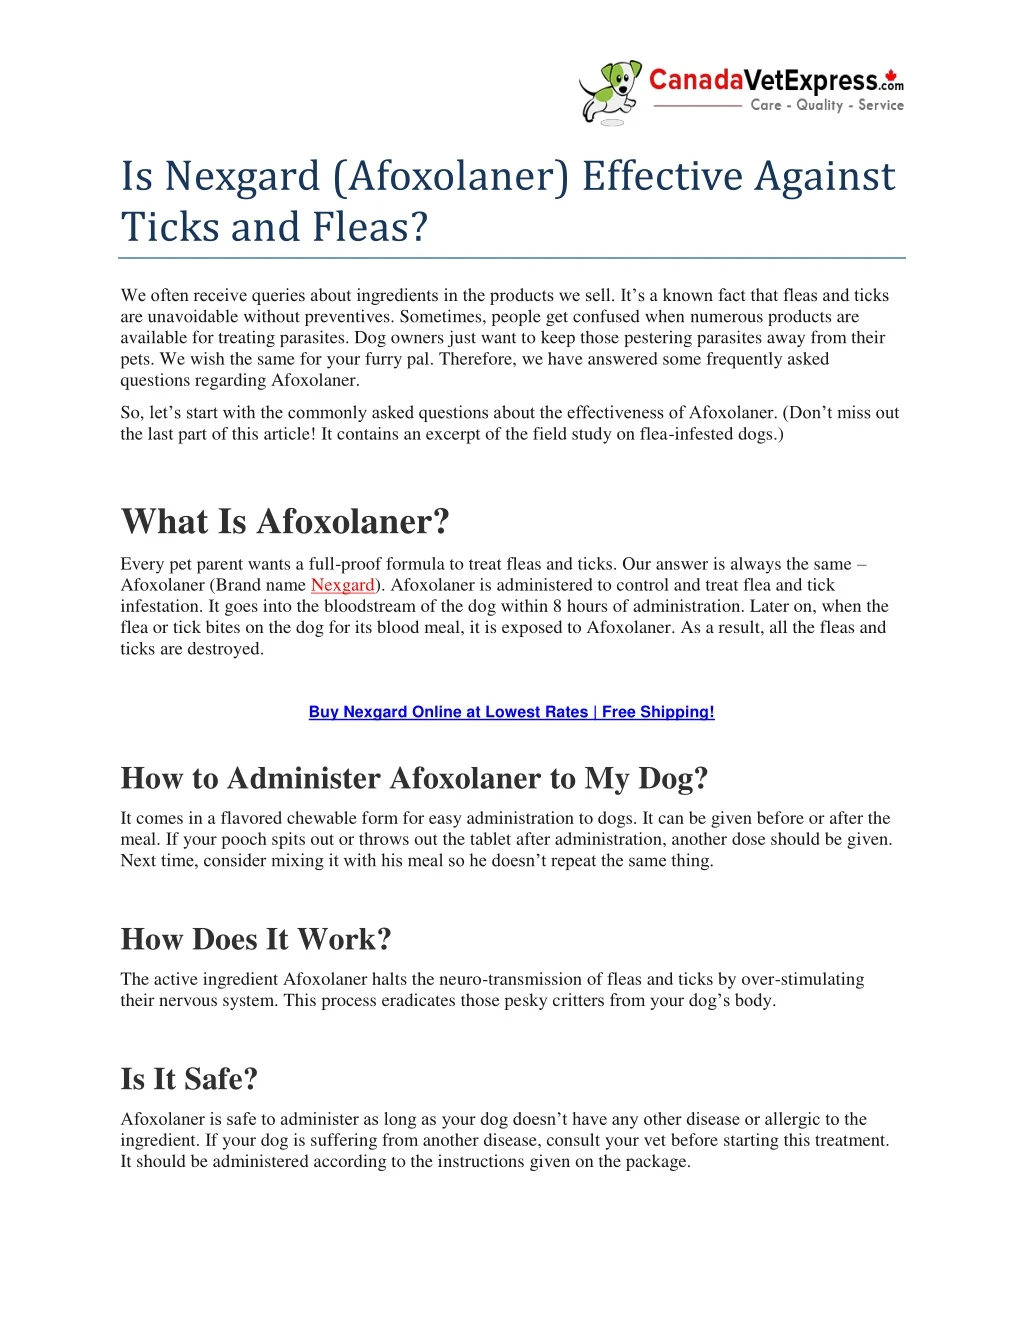 is nexgard afoxolaner effective against ticks